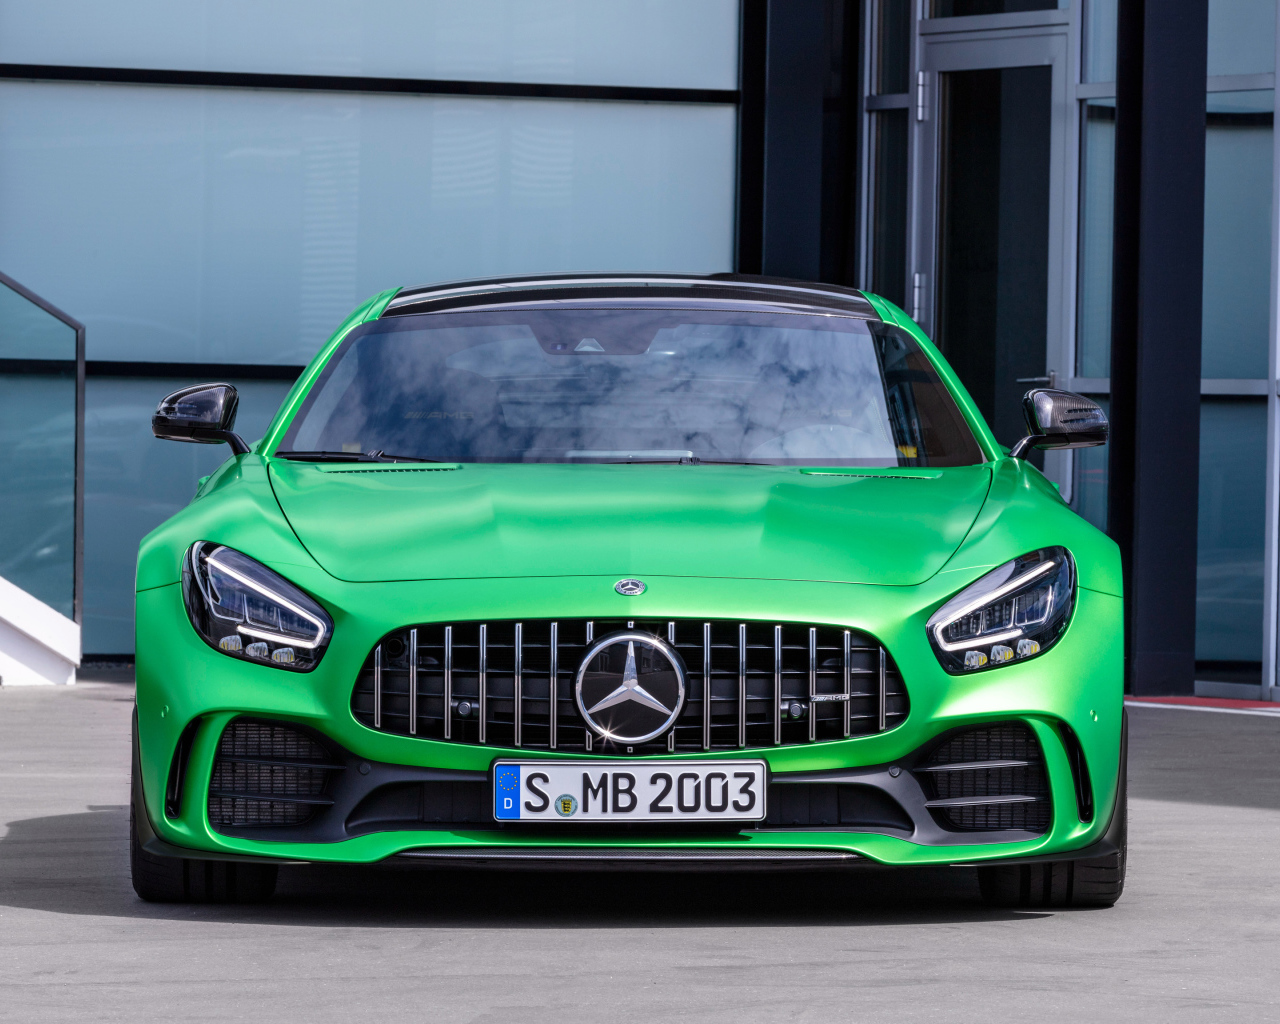 Зеленый автомобиль Mercedes-AMG GT R 2019 года вид спереди